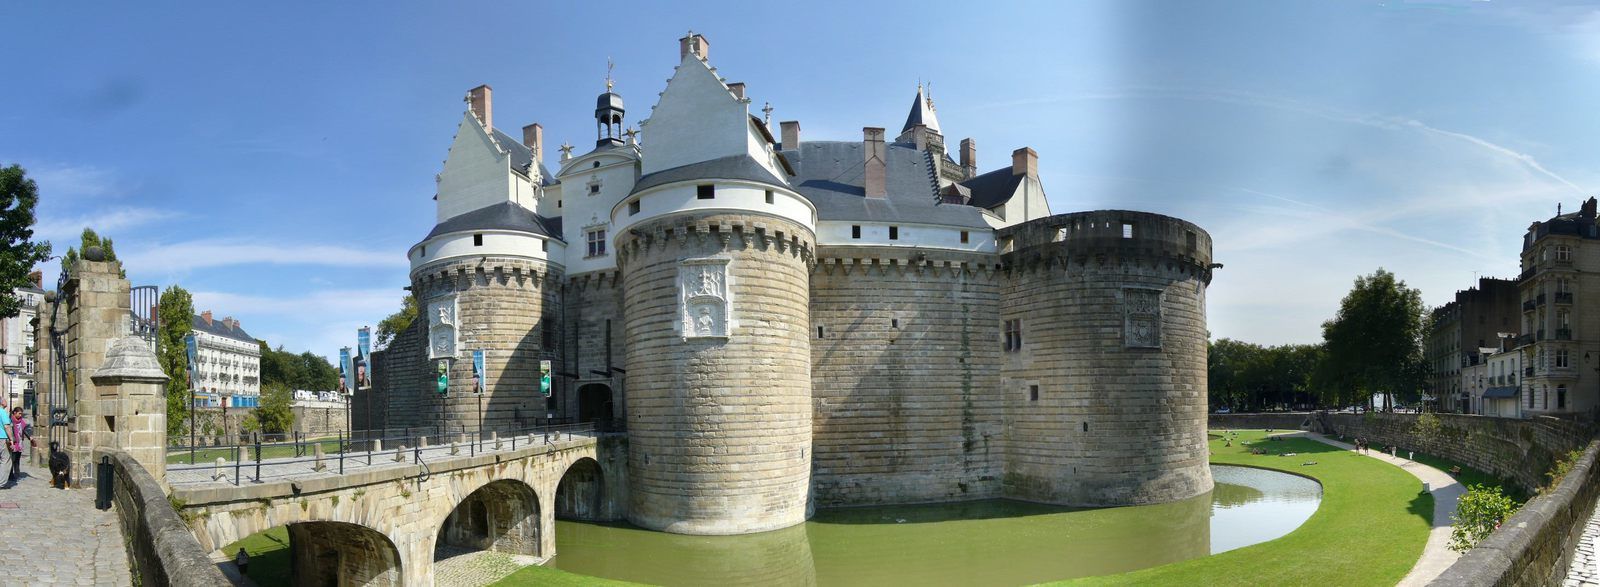 Le château de Nantes, l'une des résidences principales des ducs de Bretagne